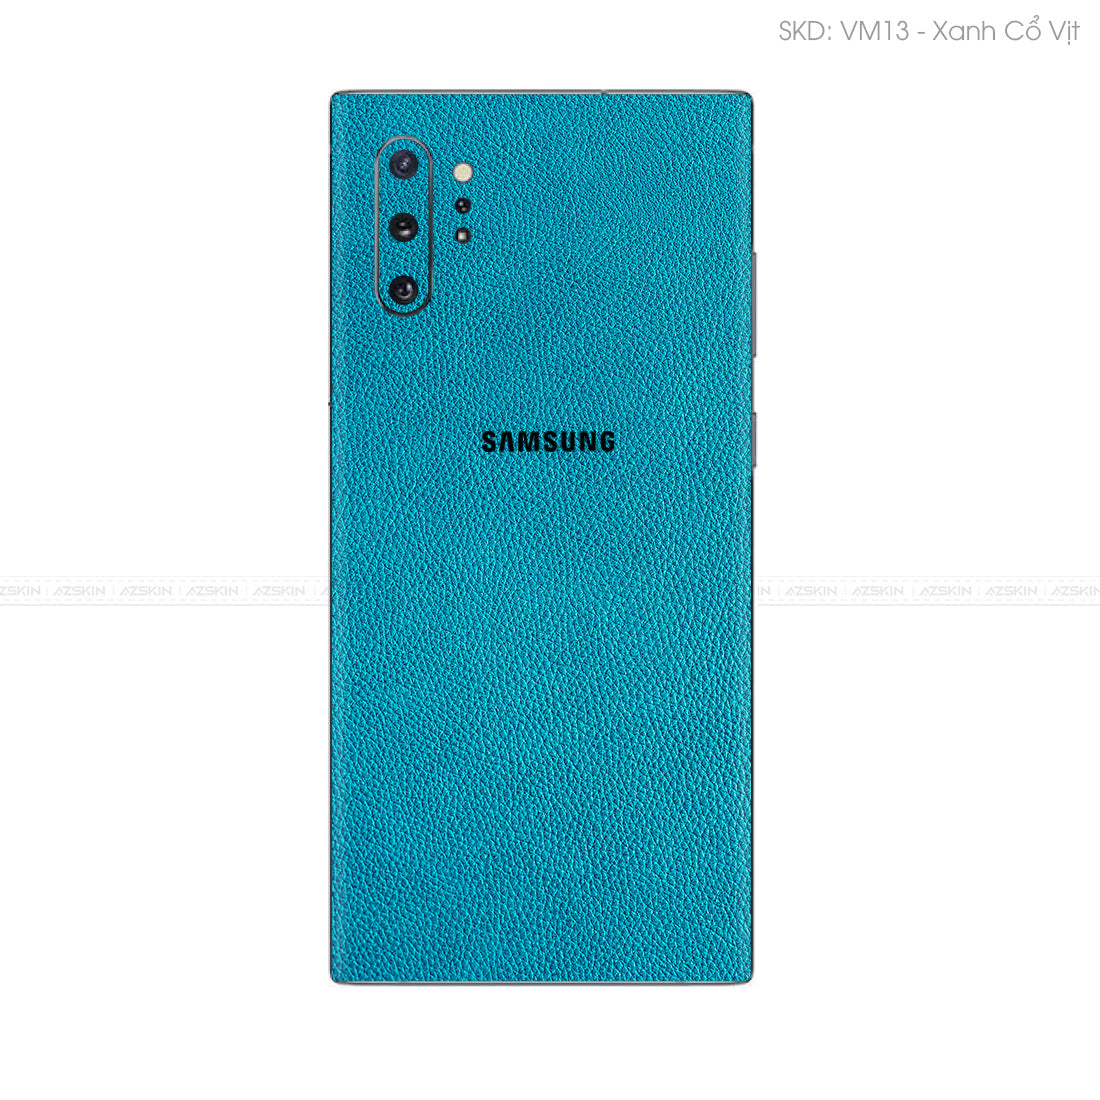 Miếng Dán Da Samsung Note 10 Series Vân Mil Xanh Cổ Vịt | VM13